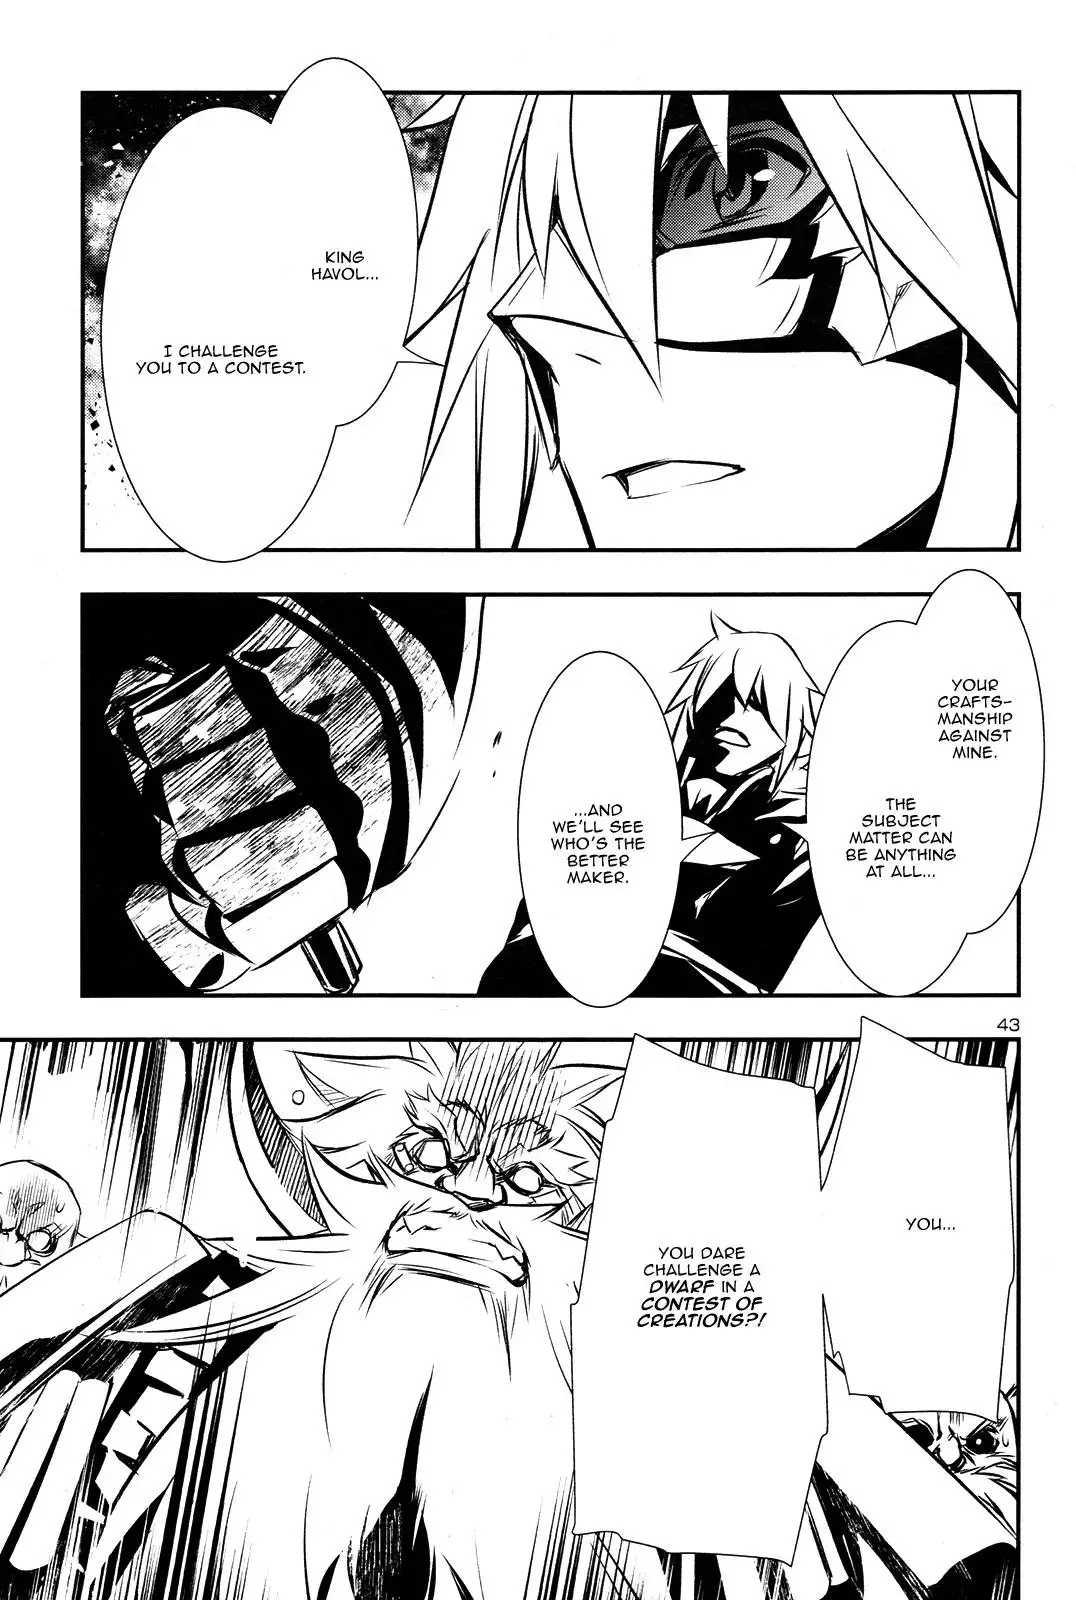 Shinju no Nectar - 9 page 41